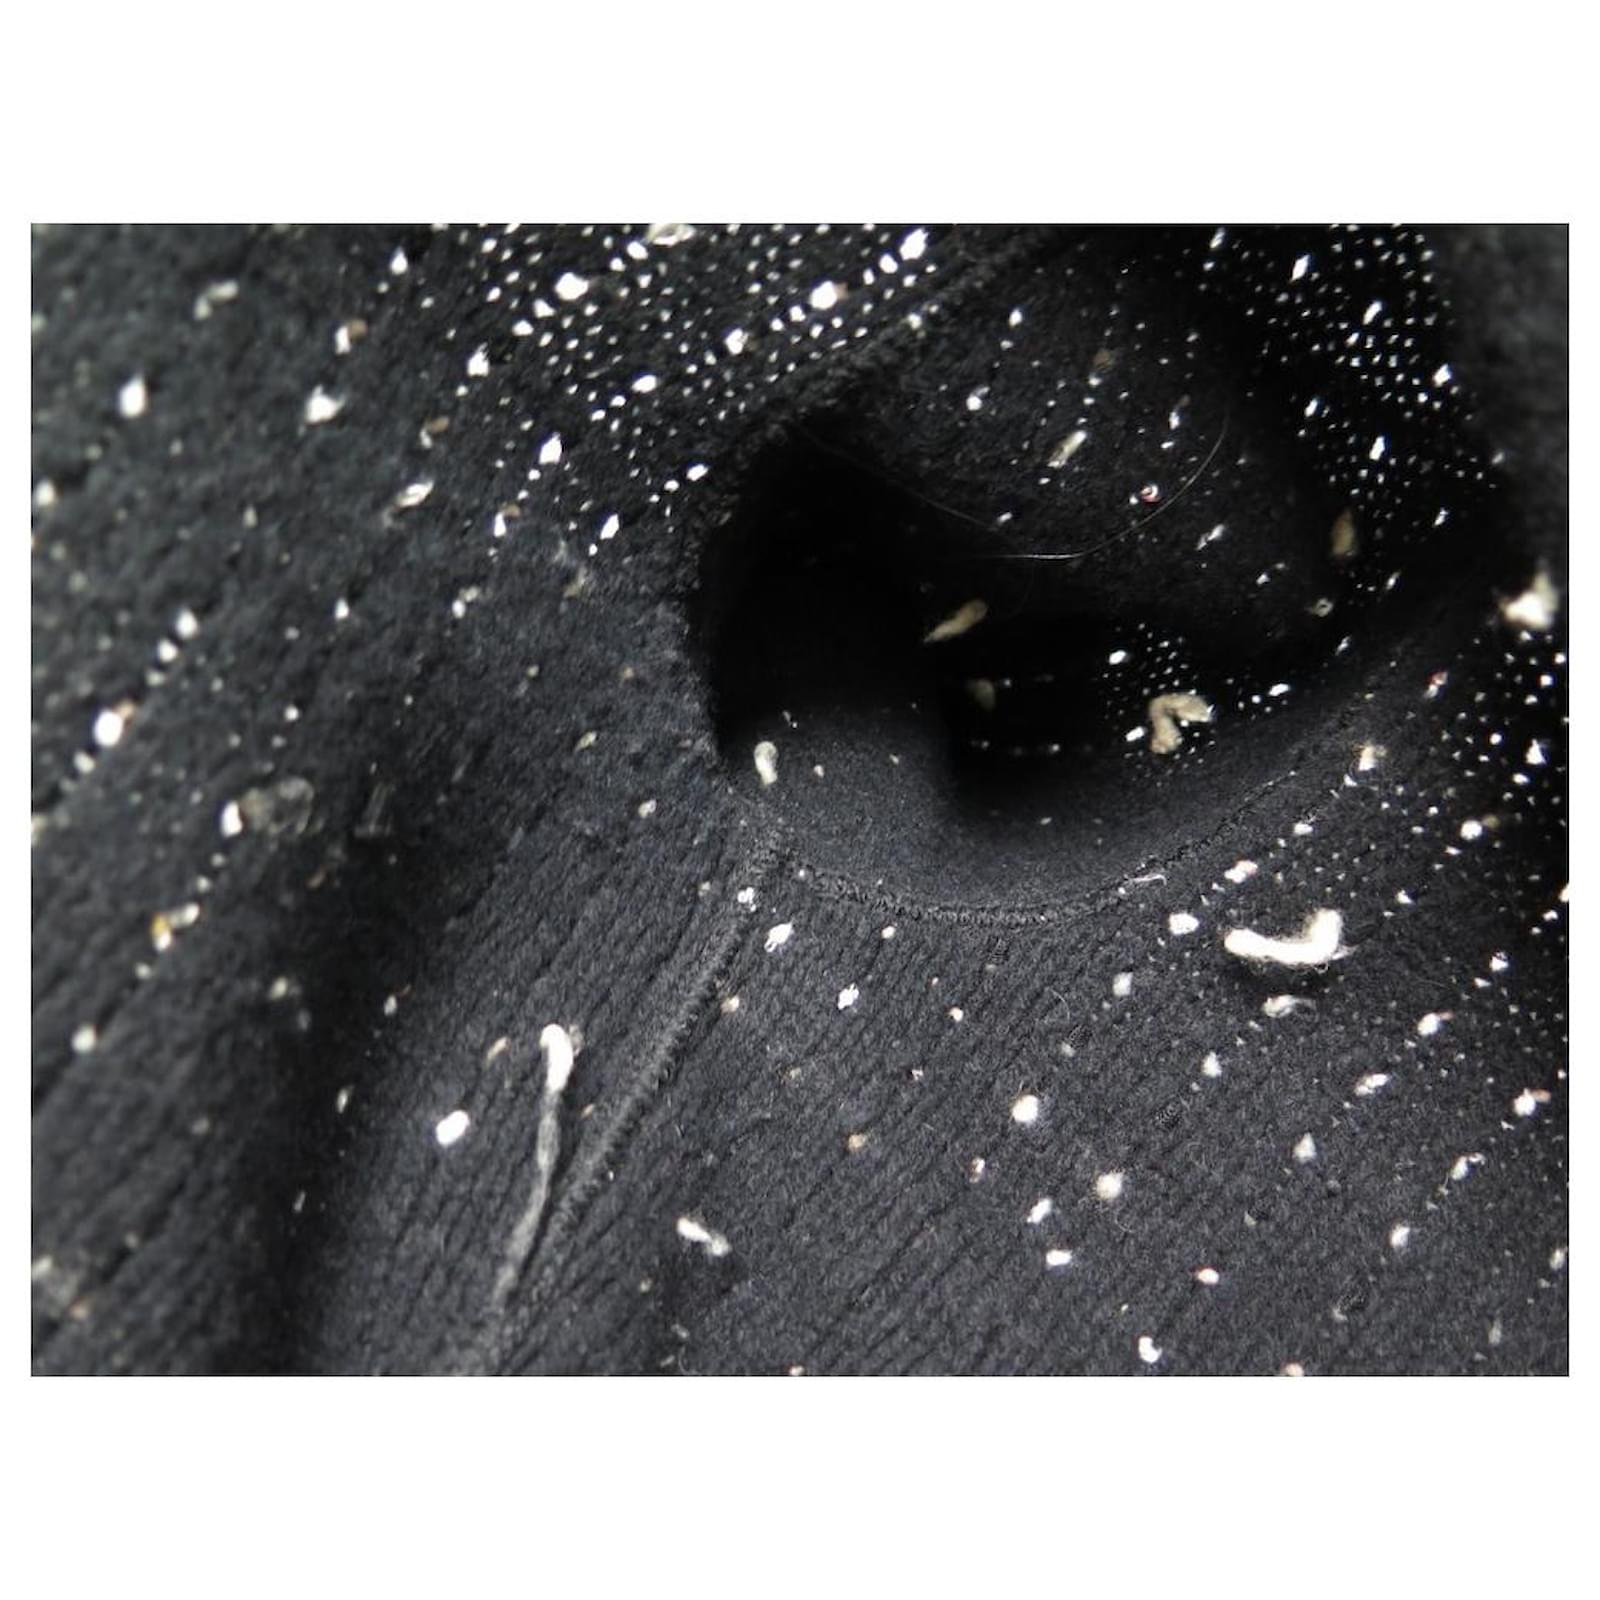 4.8K New Chanel 2015 Tweed Gray Crop Jacket 38 40 42 6 8 10 Coat